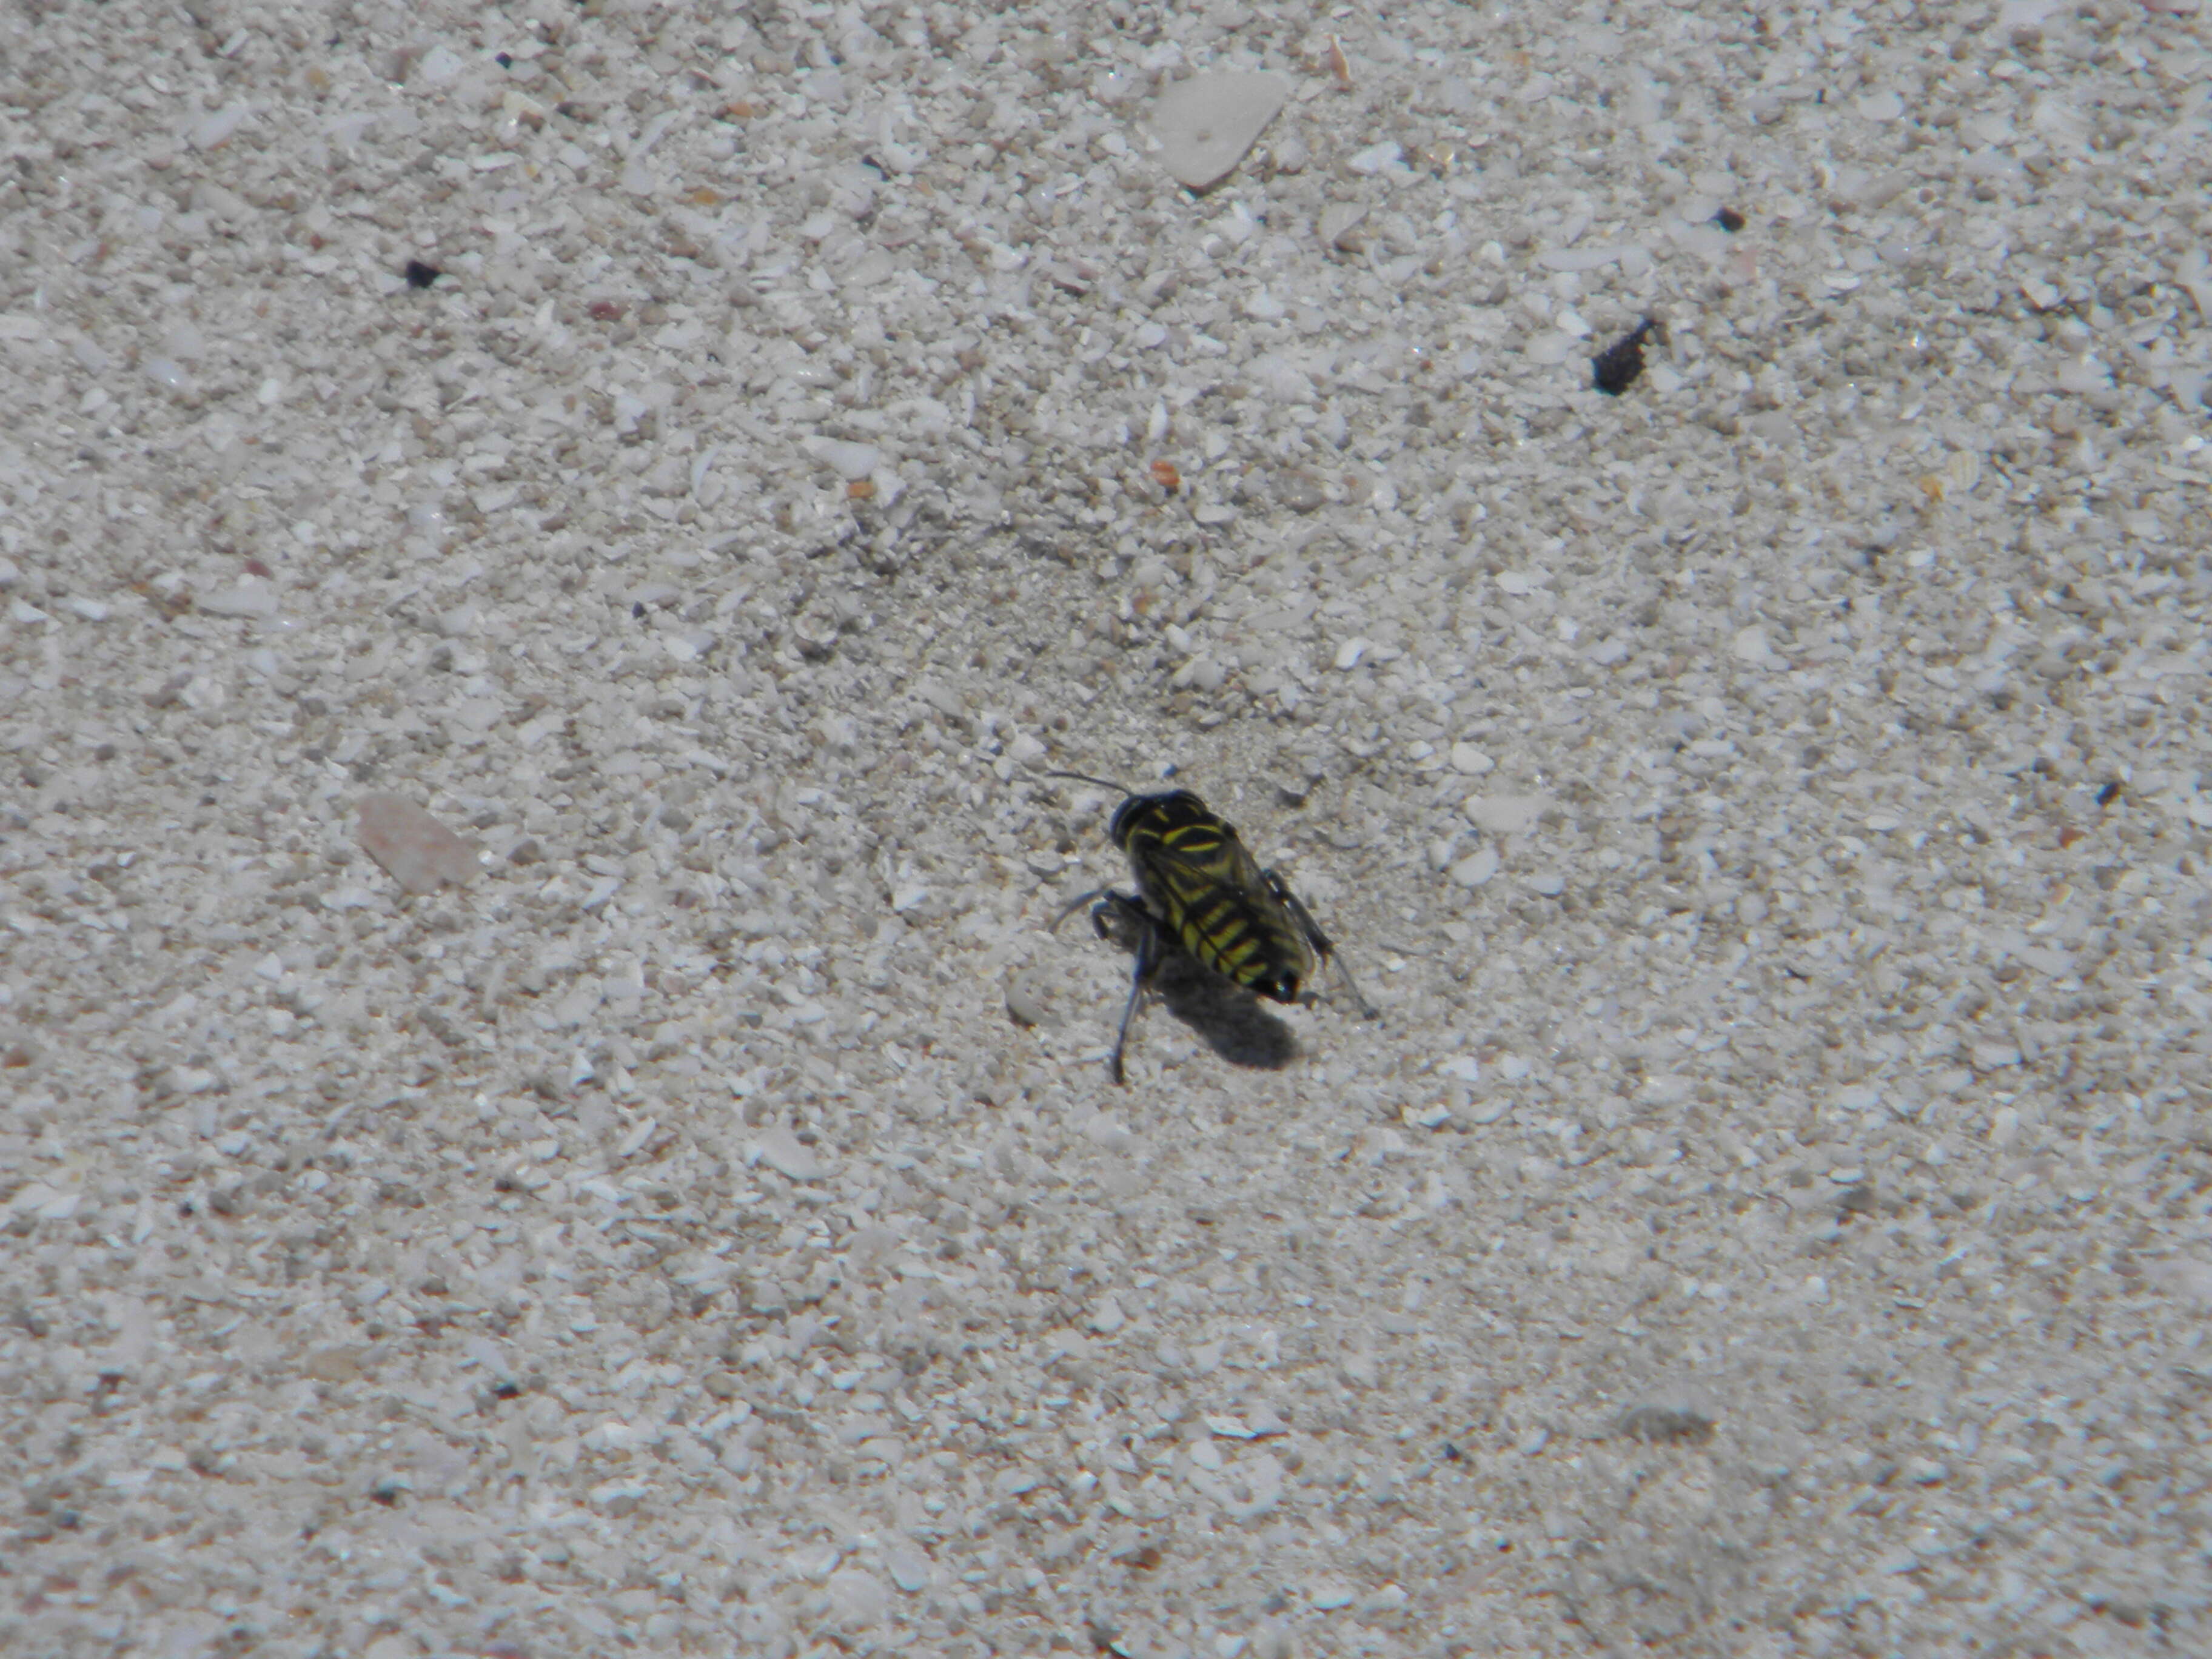 Image of Sand Wasps